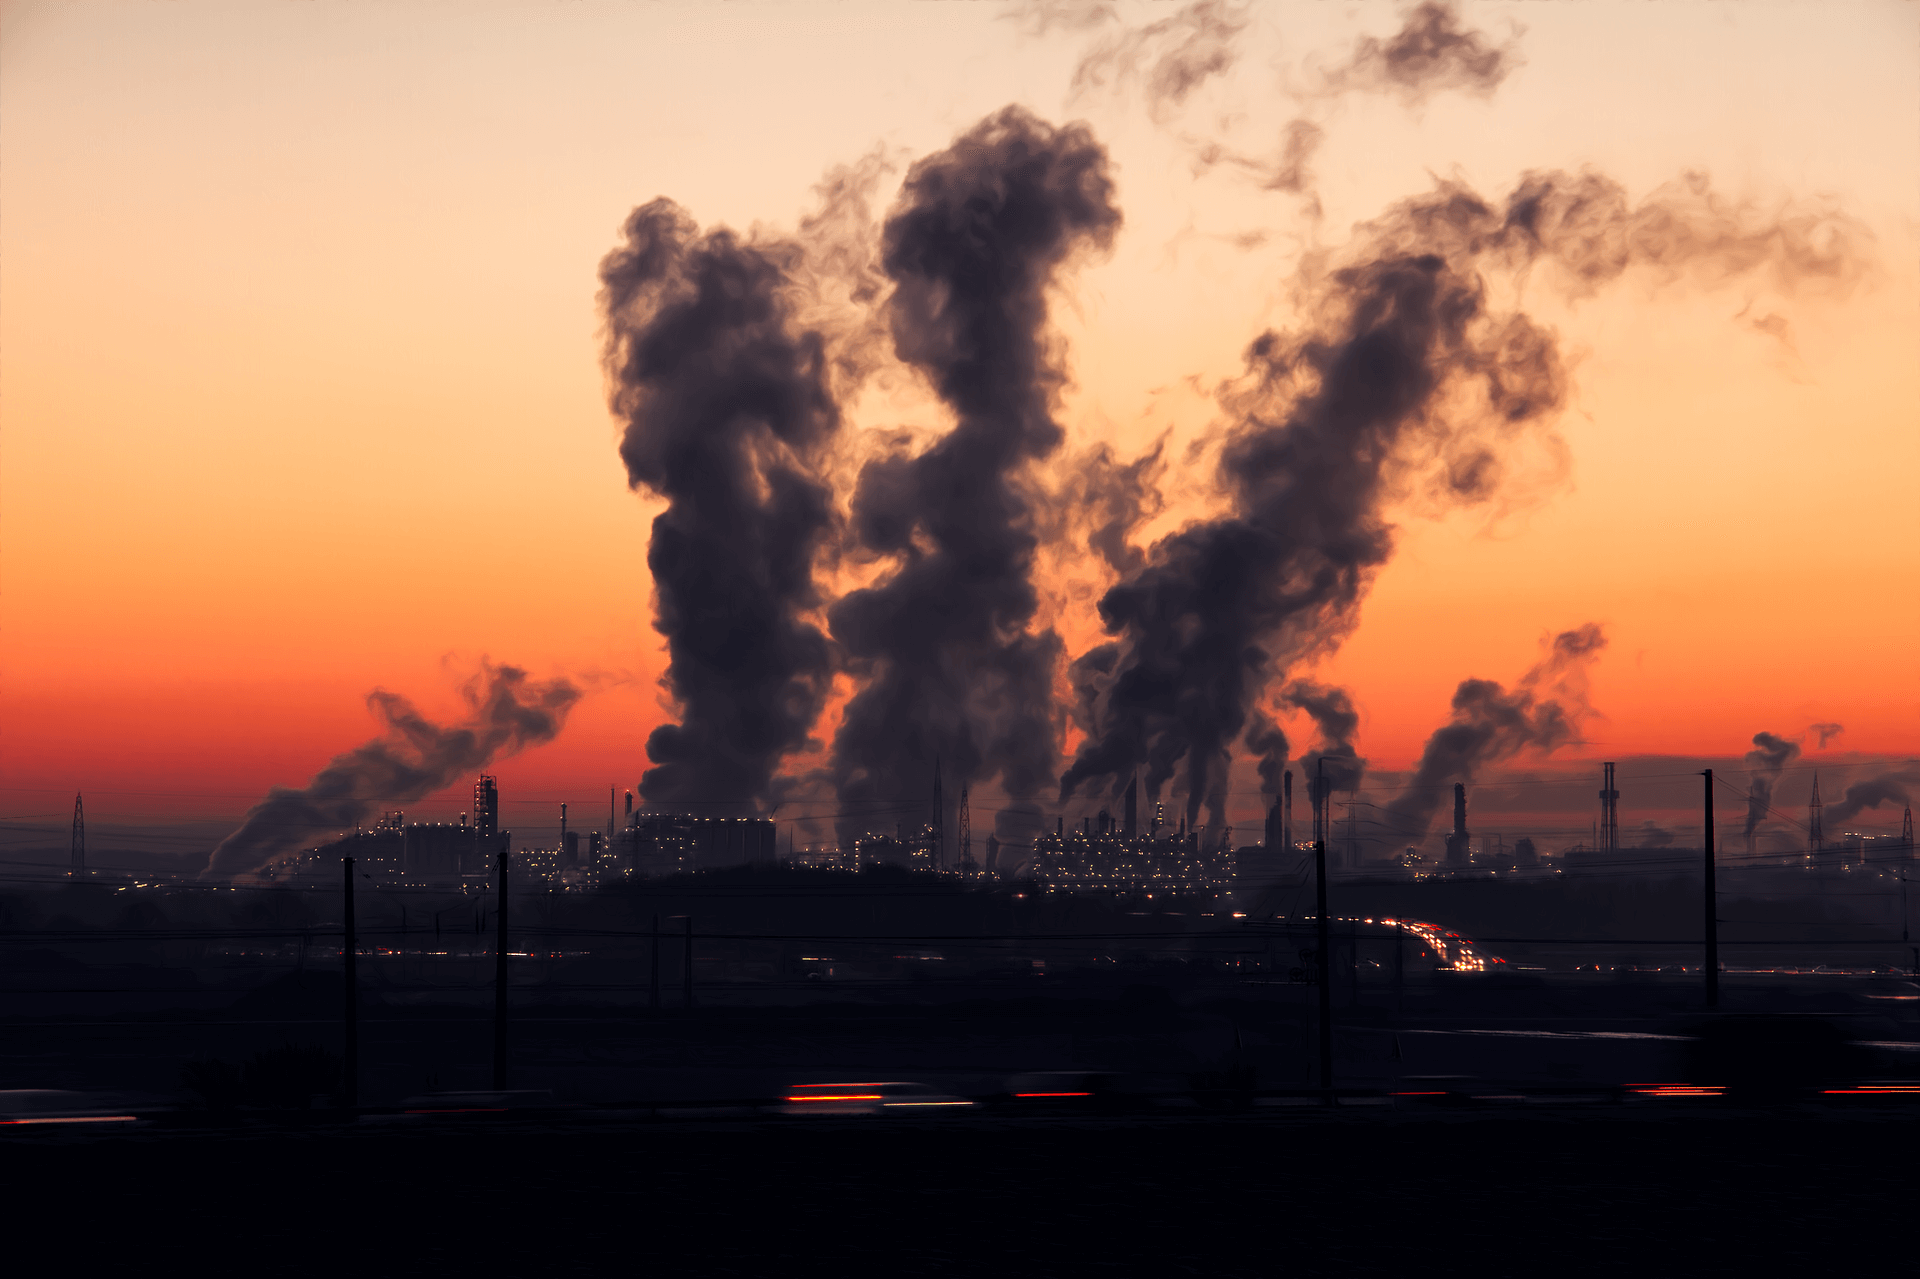 podoba industrijskega onesnaženja